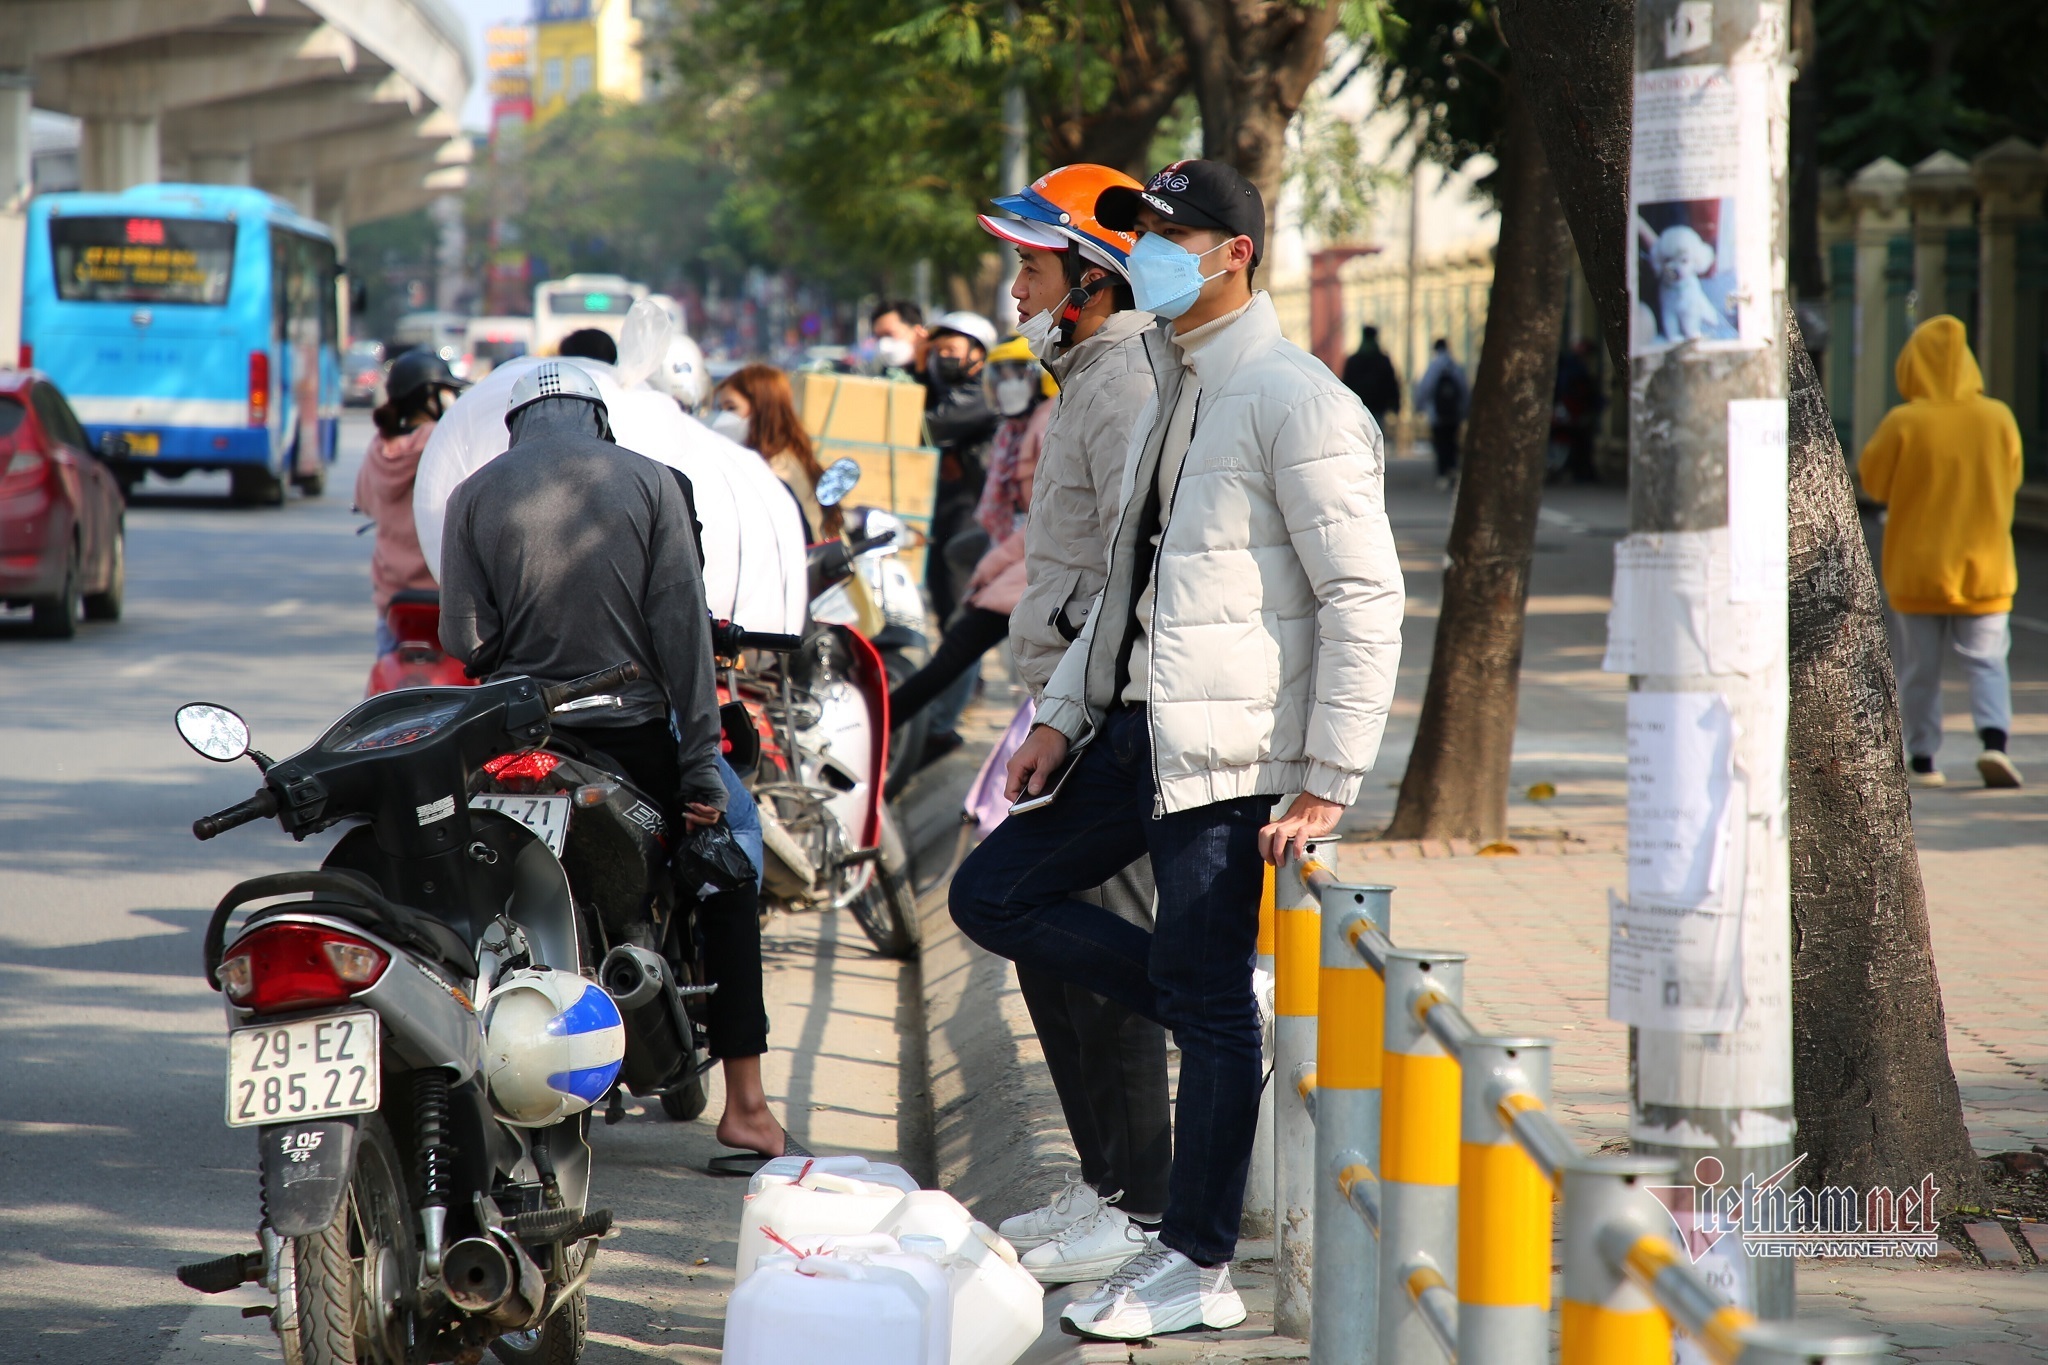 Hình ảnh rào vỉa hè ở Hà Nội chặn cả lối đi bộ, qua đường buộc phải trèo